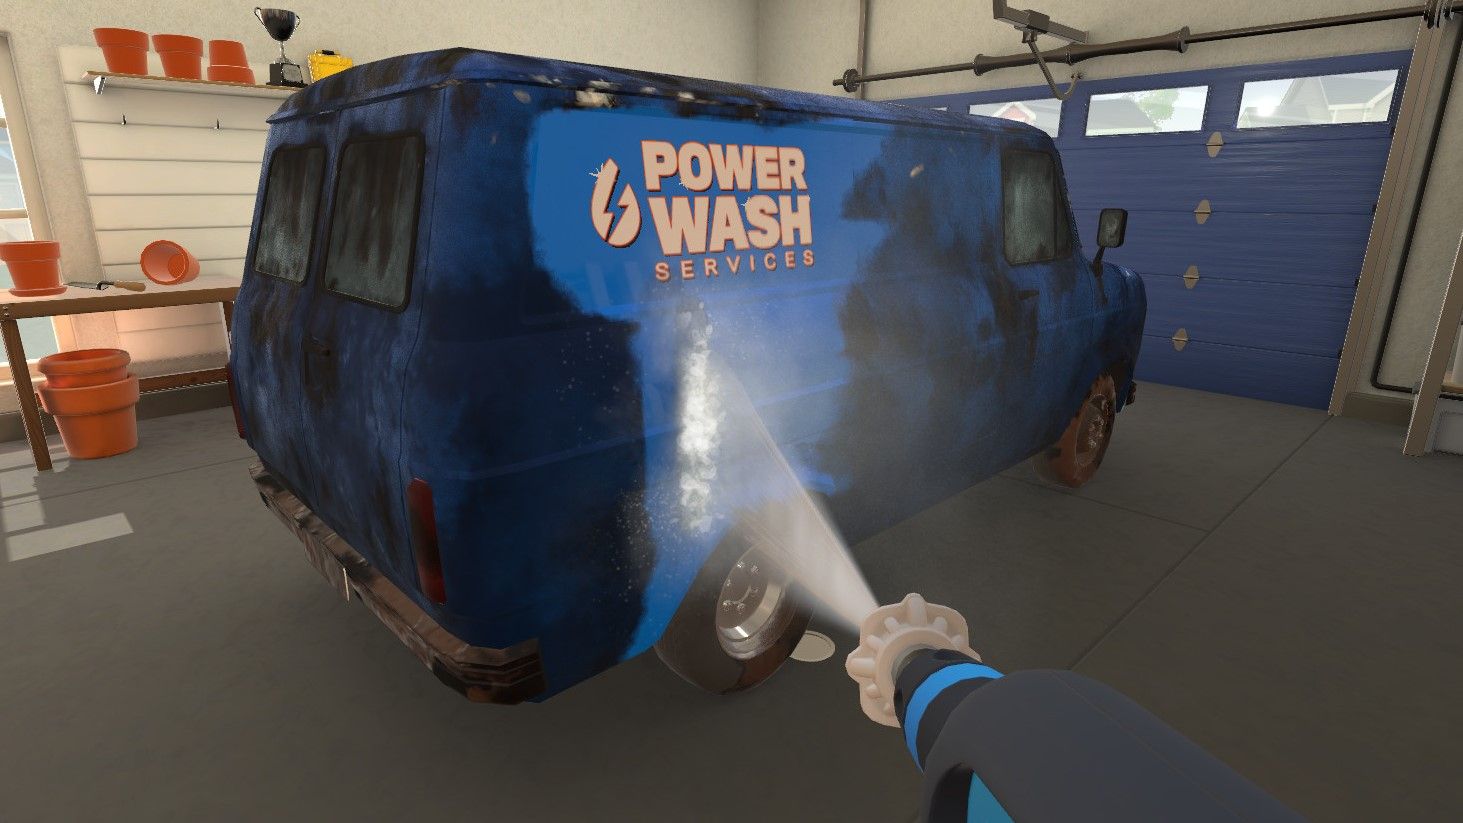 PowerWash Simulator VR announced for Meta Quest